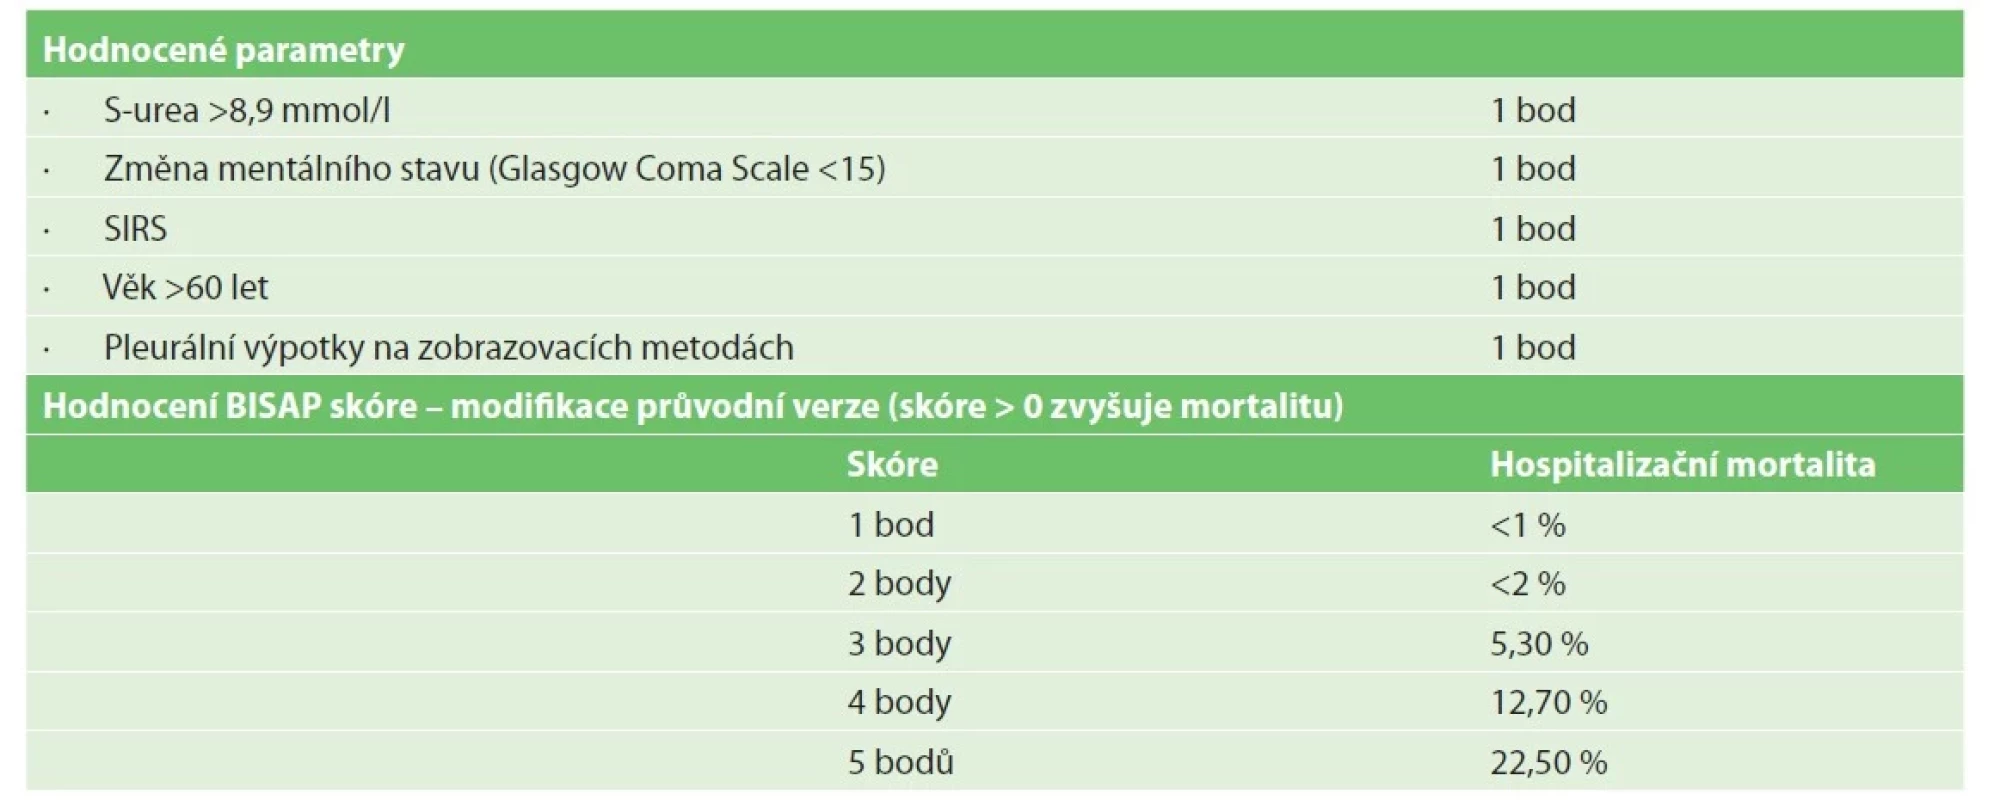 Skóre pro stanovení pravděpodobnosti závažného průběhu akutní pankreatitidy<br>
Tab. 1: Bedside index for severity in acute pancreatitis (BISAP) Score